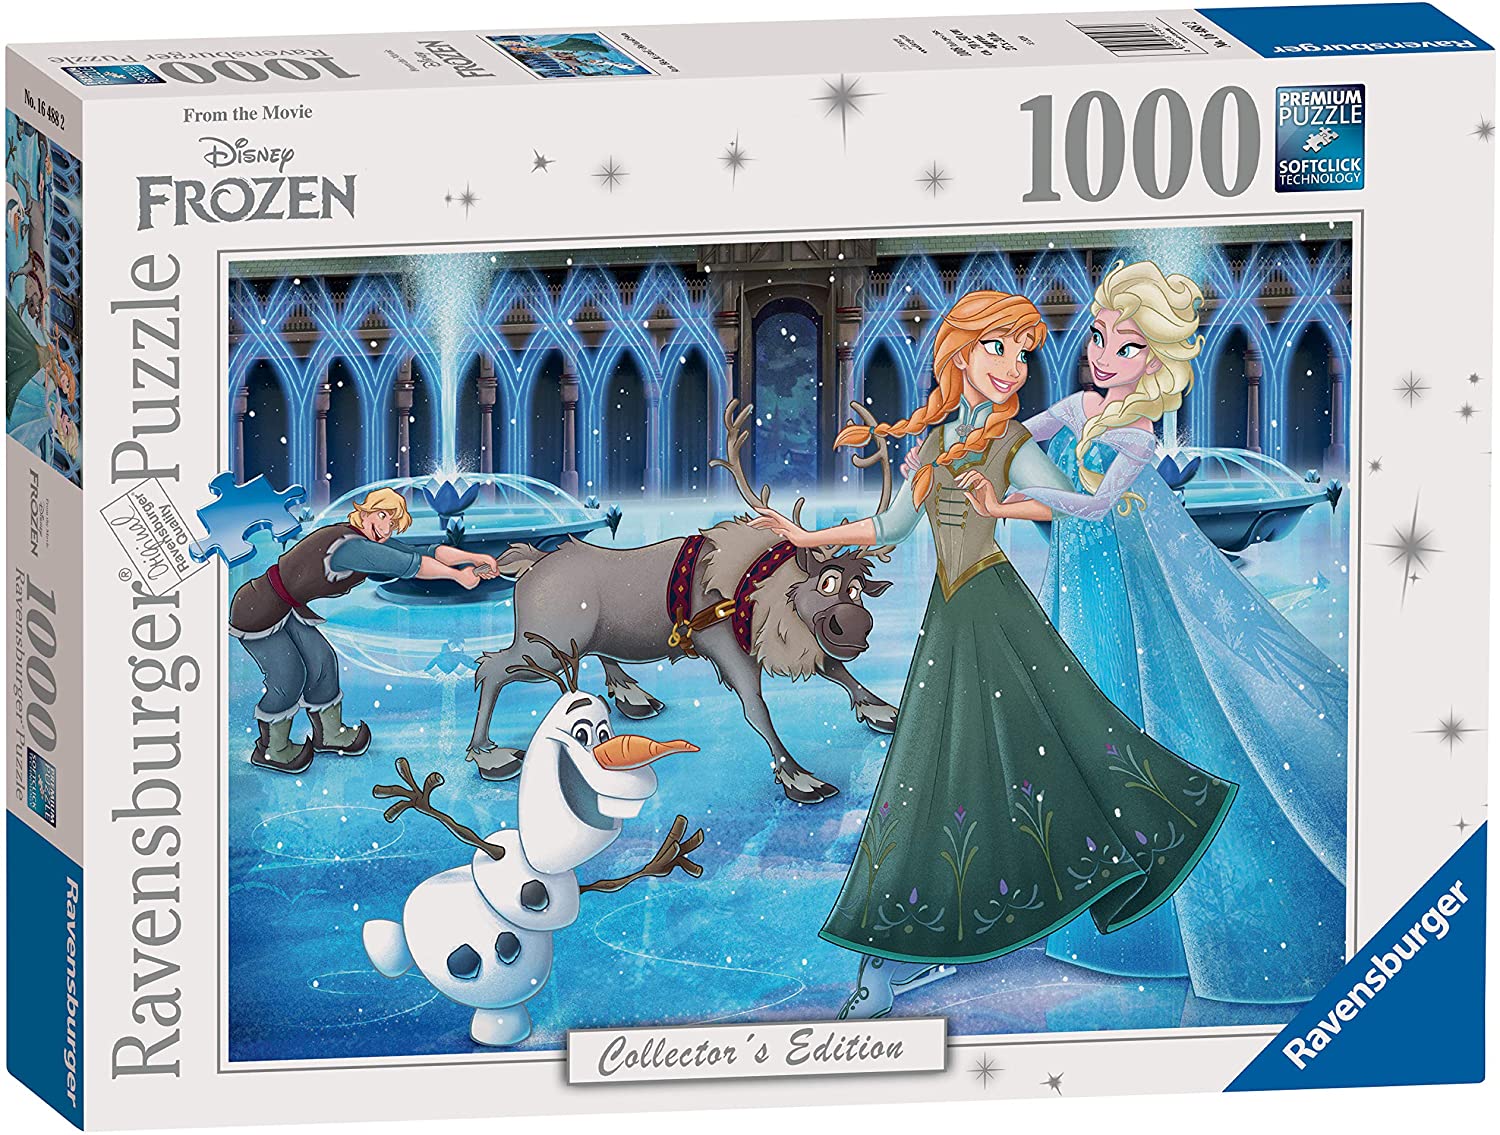 Frozen Puzzle - 1000 Pieces 